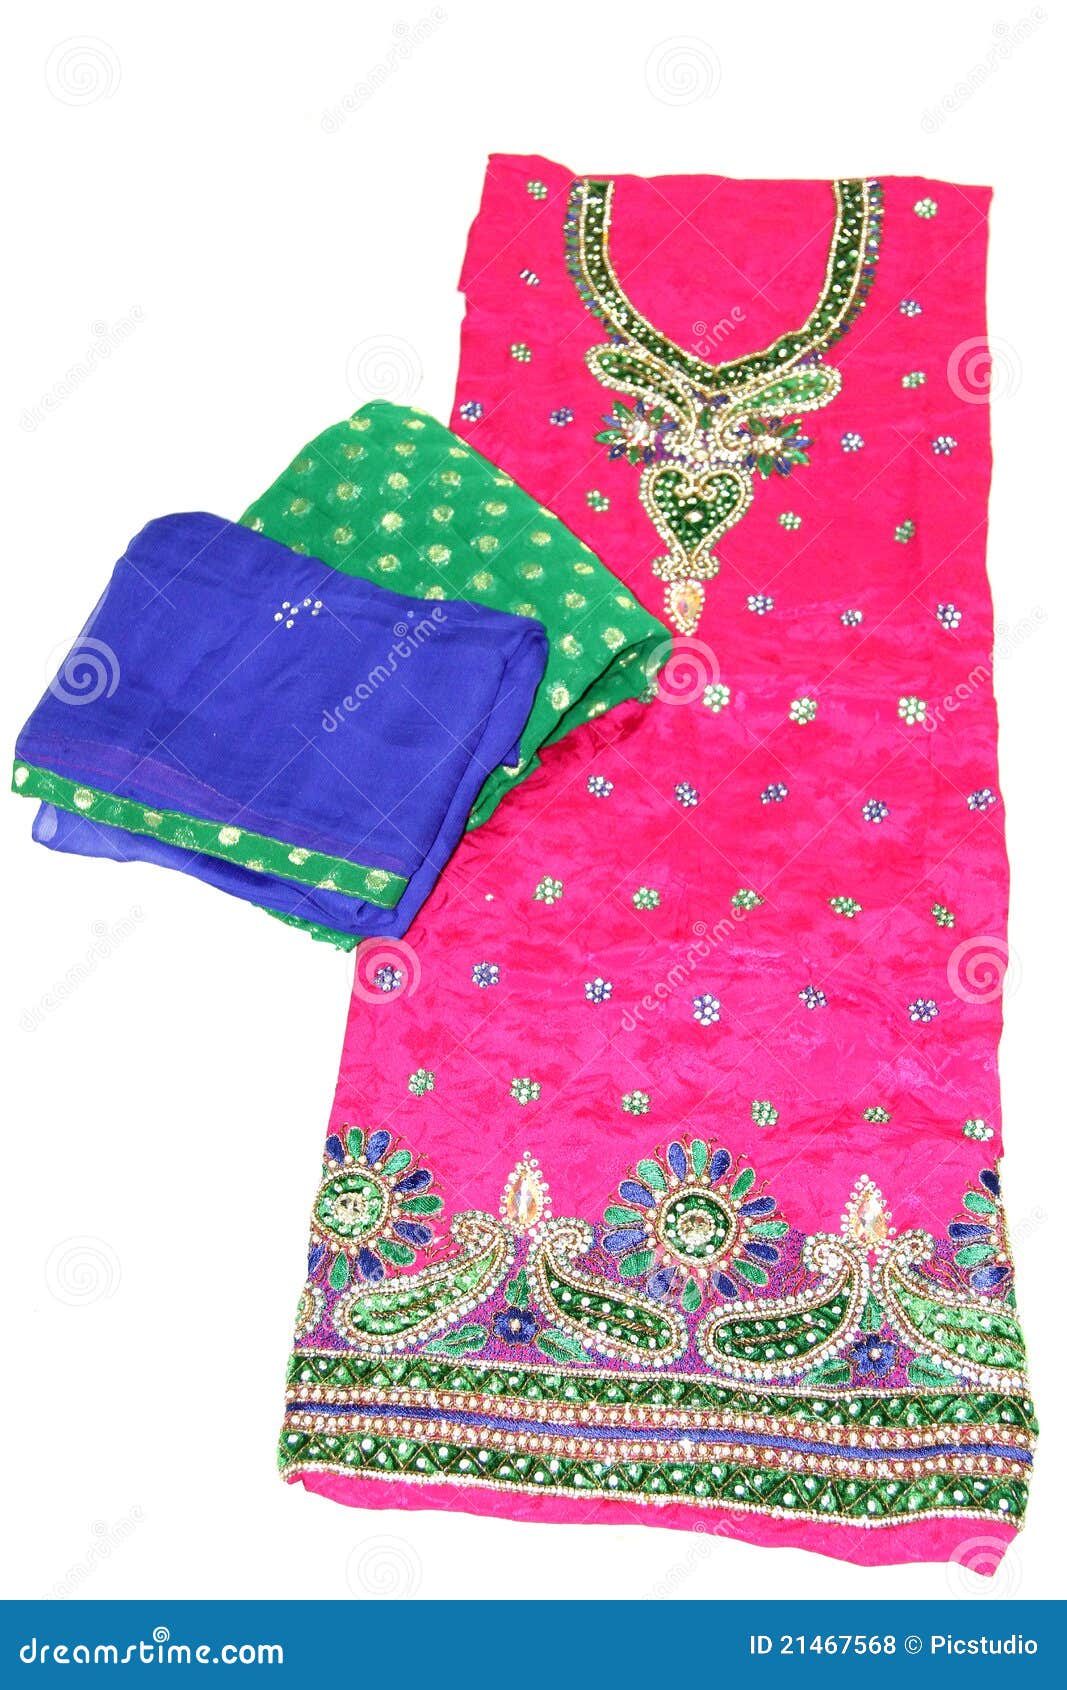 Embroidered punjabi suit stock photo. Image of clothing - 21467568